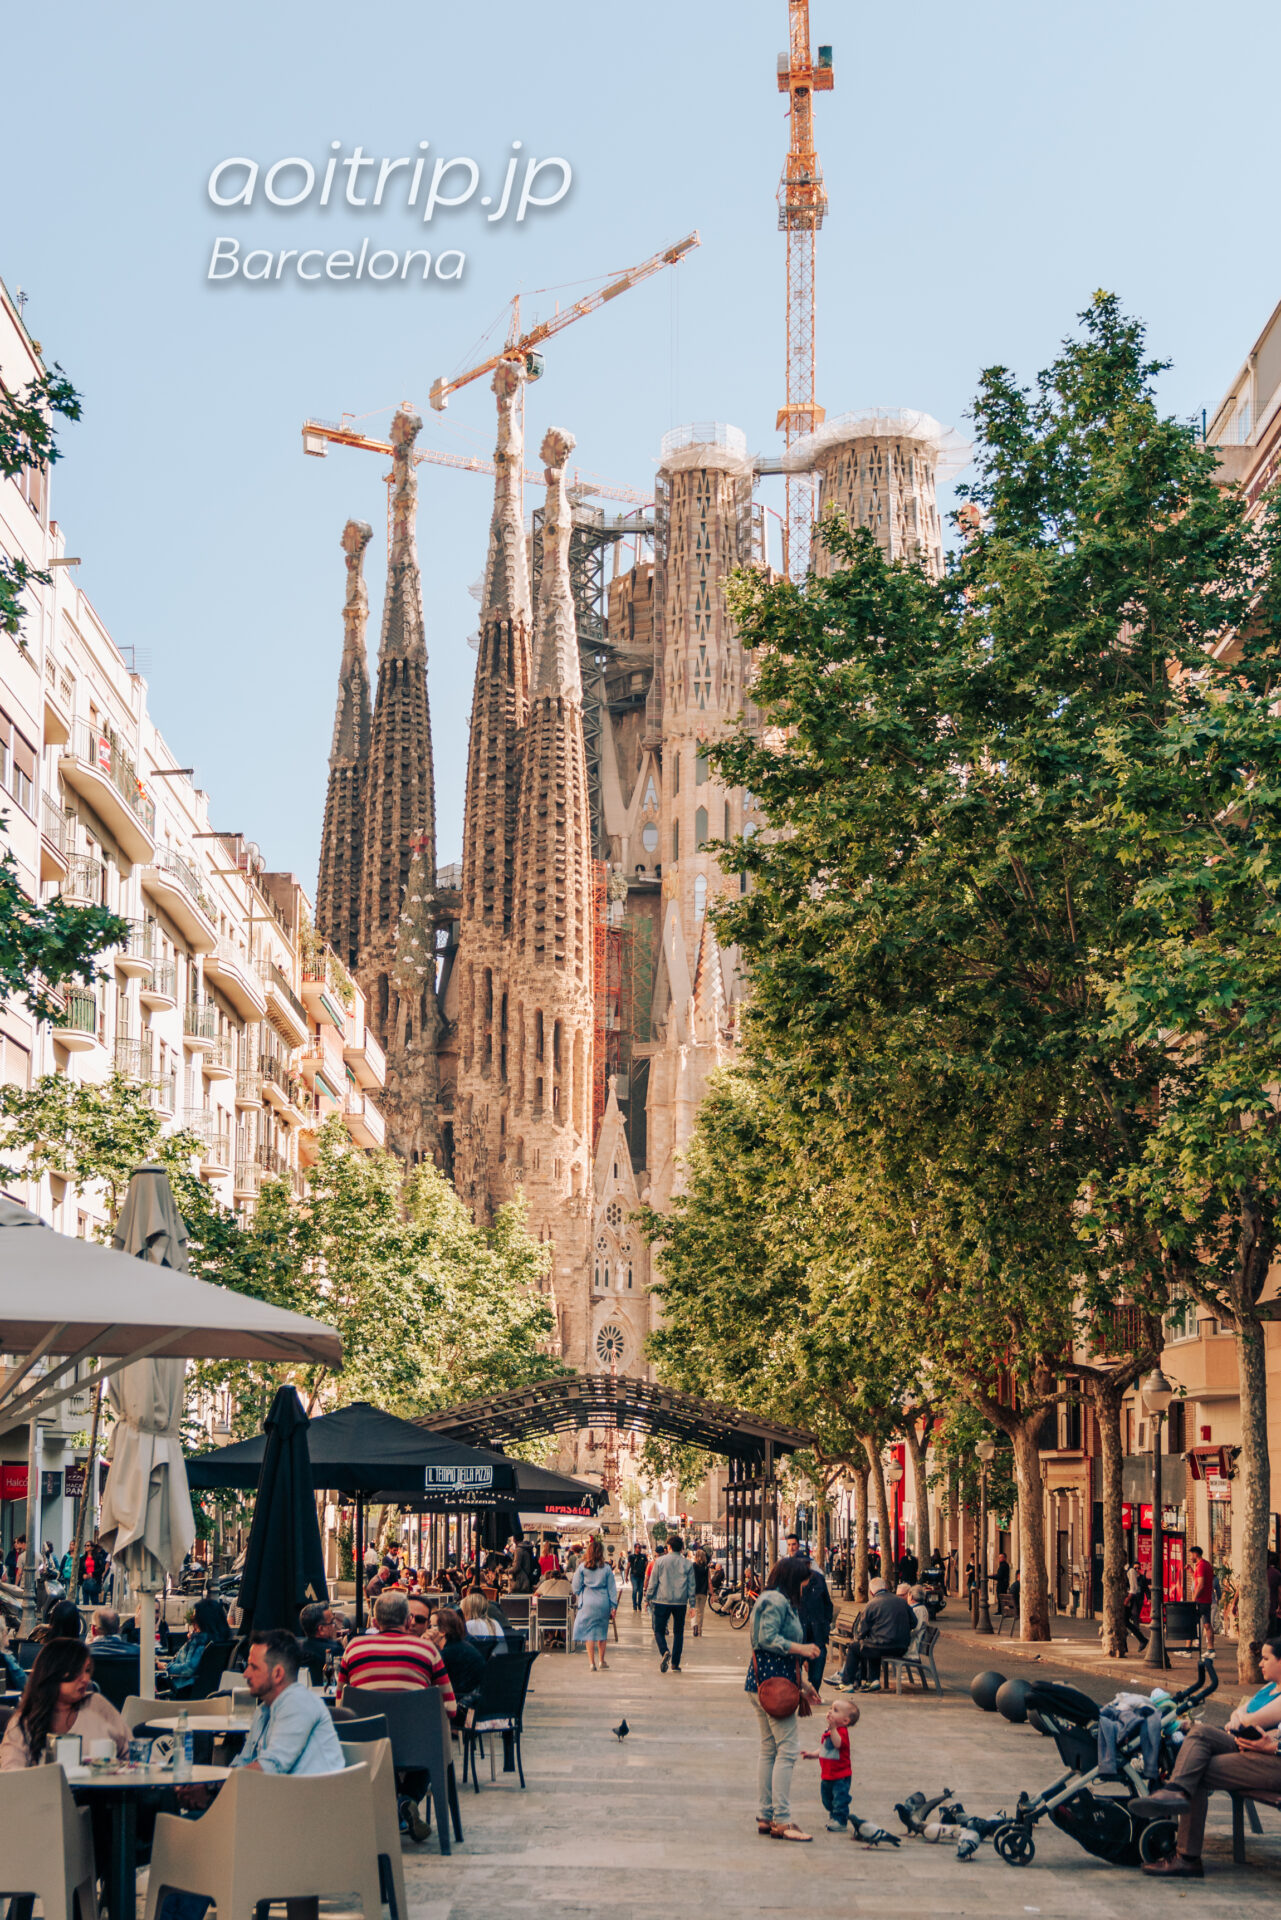 バルセロナ サグラダファミリアの目次ページ Basílica de la Sagrada Família, Barcelona